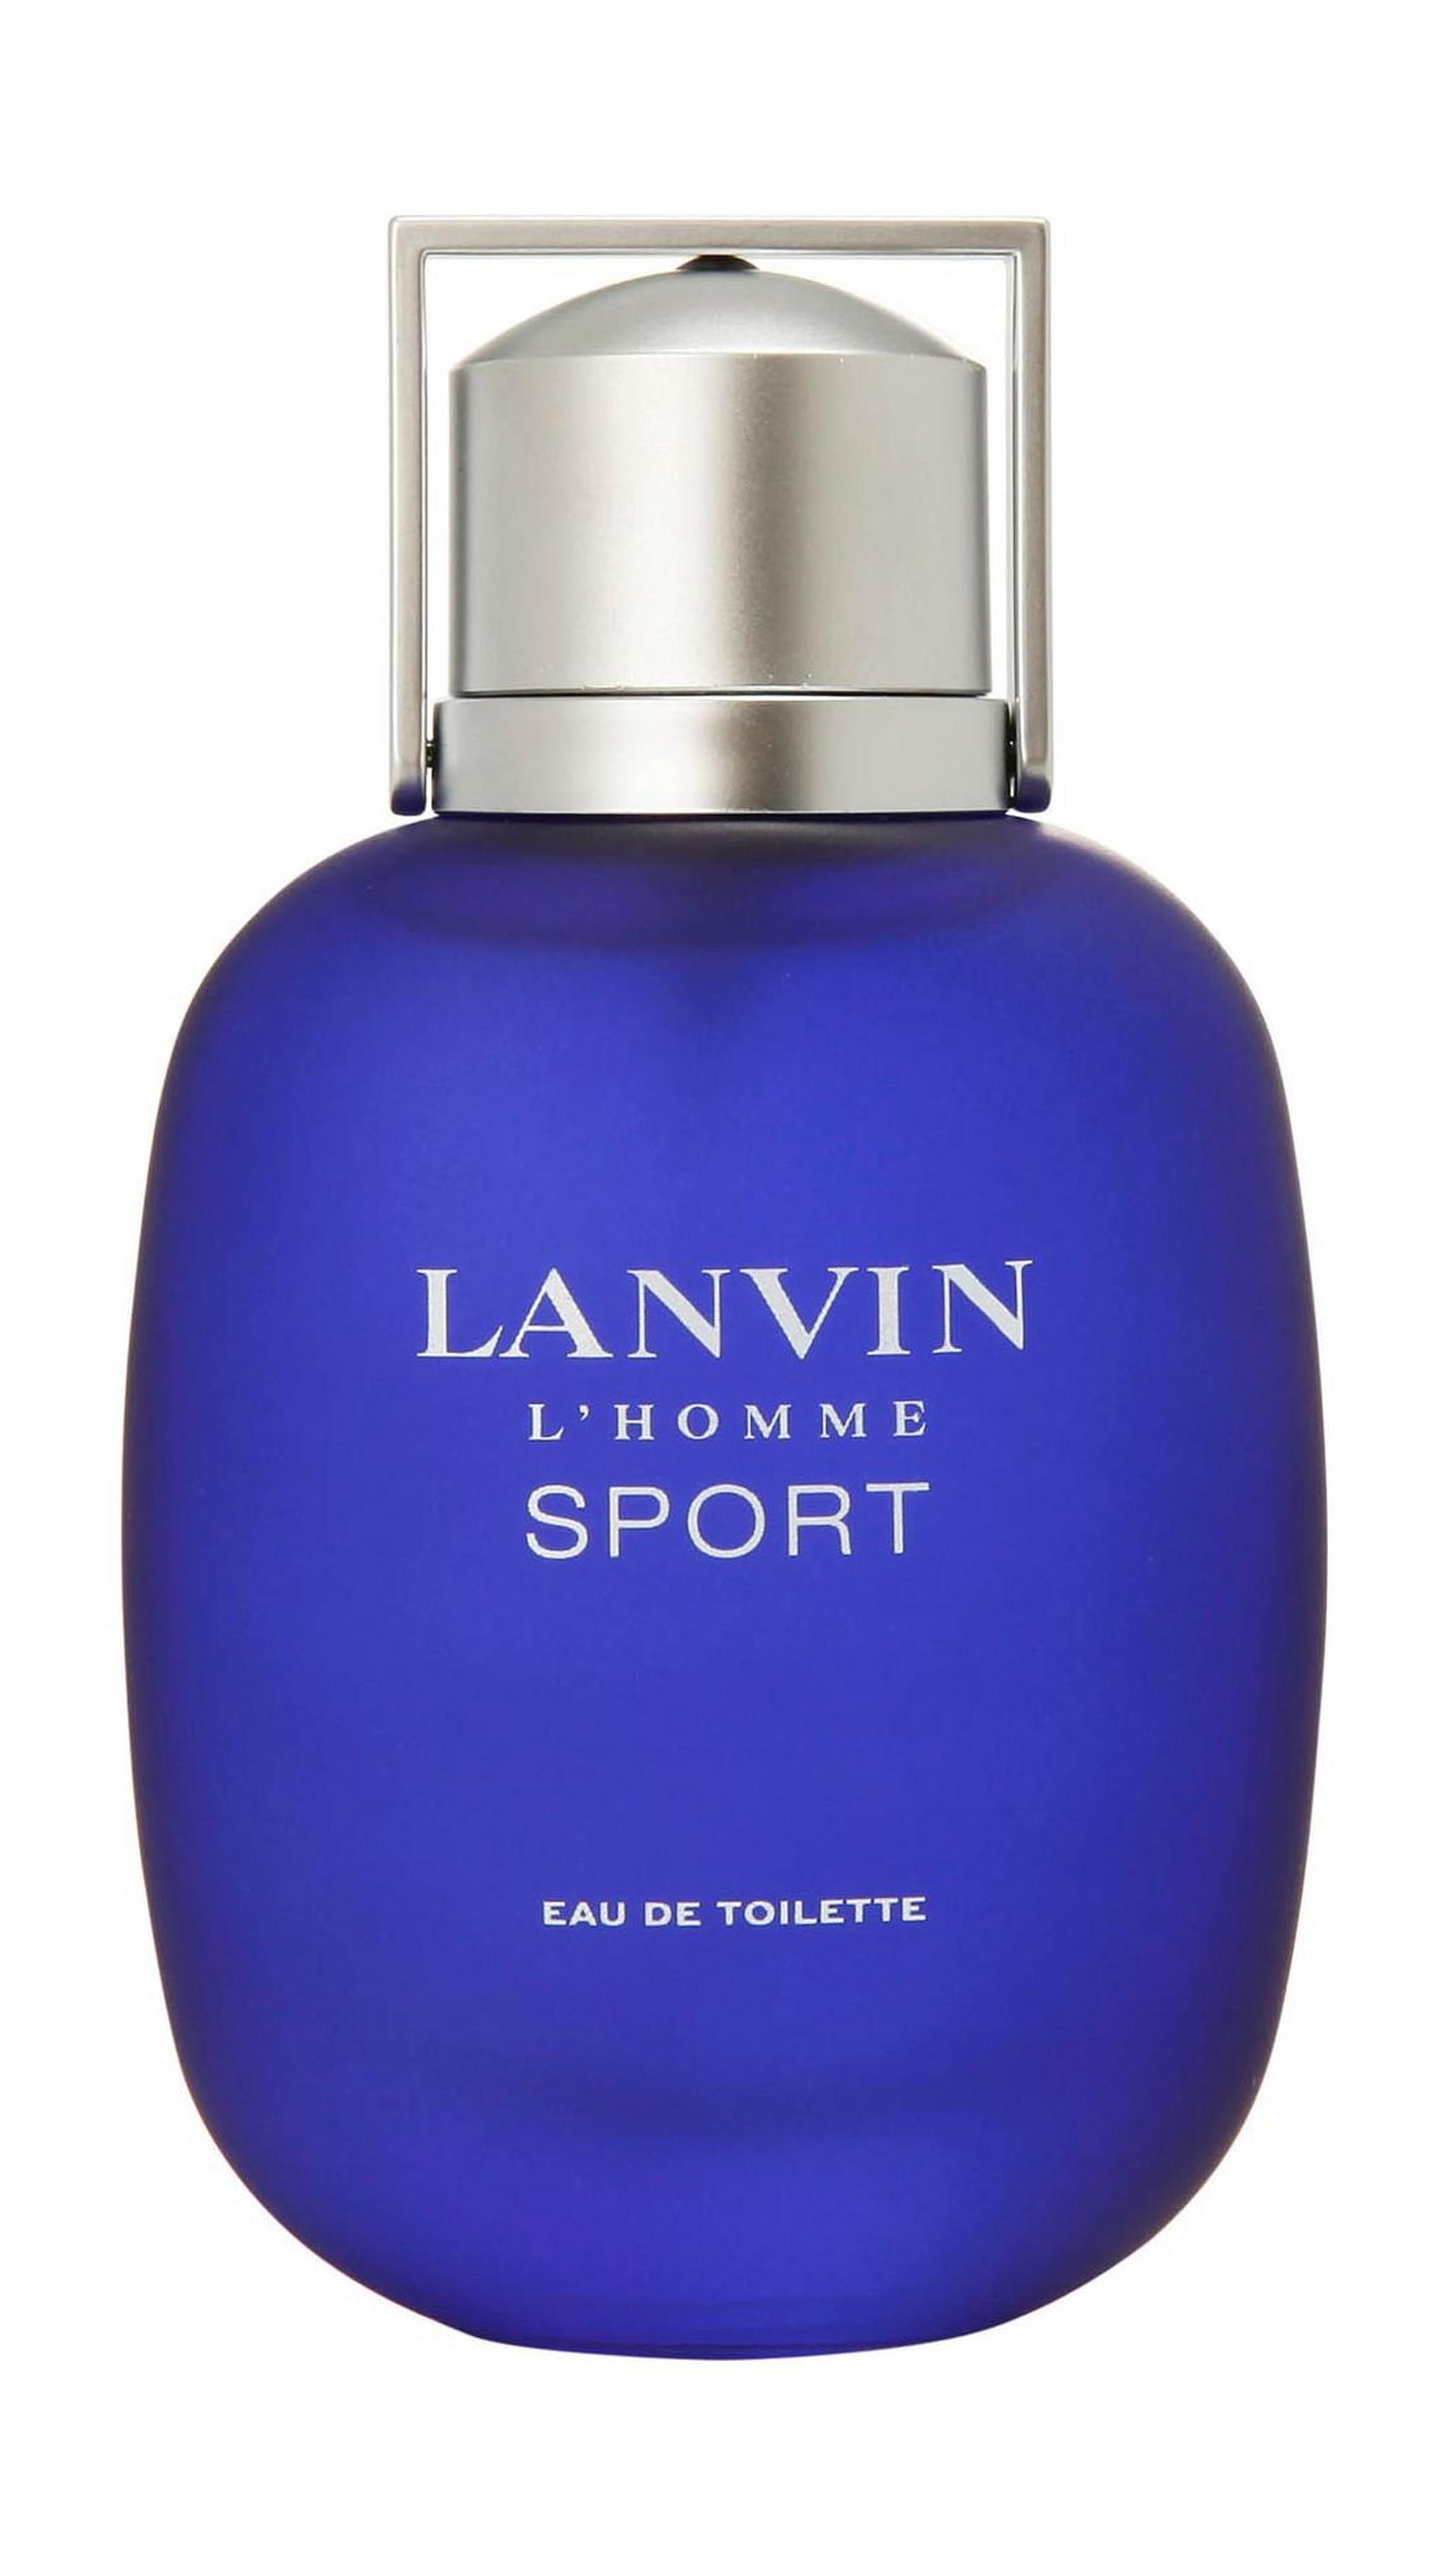 Lanvin L'Homme Sport by Lanvin for Men 100 mL Eau de Toilette